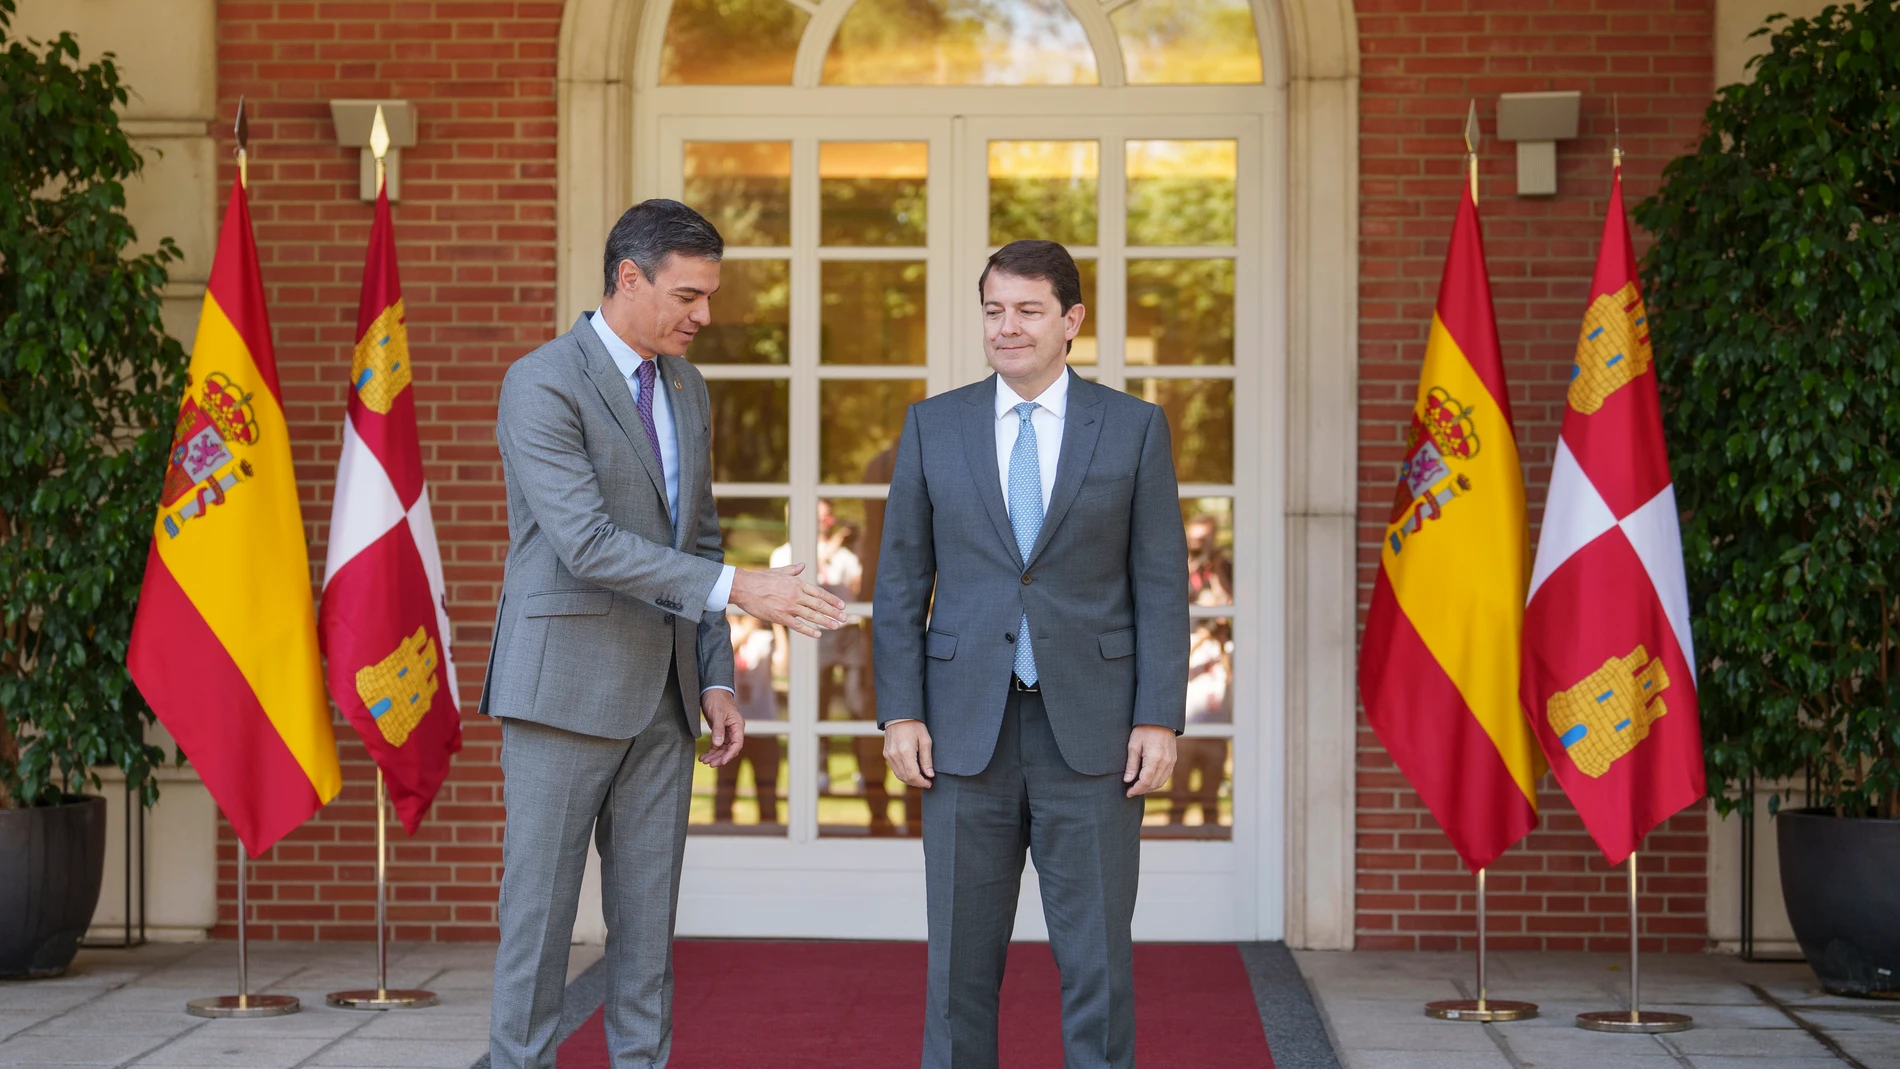 El presidente del Gobierno, Pedro Sánchez, mantiene un encuentro con el presidente de la Junta de Castilla y Leon, Alfonso Fernández Mañueco, en el Palacio de la Moncloa